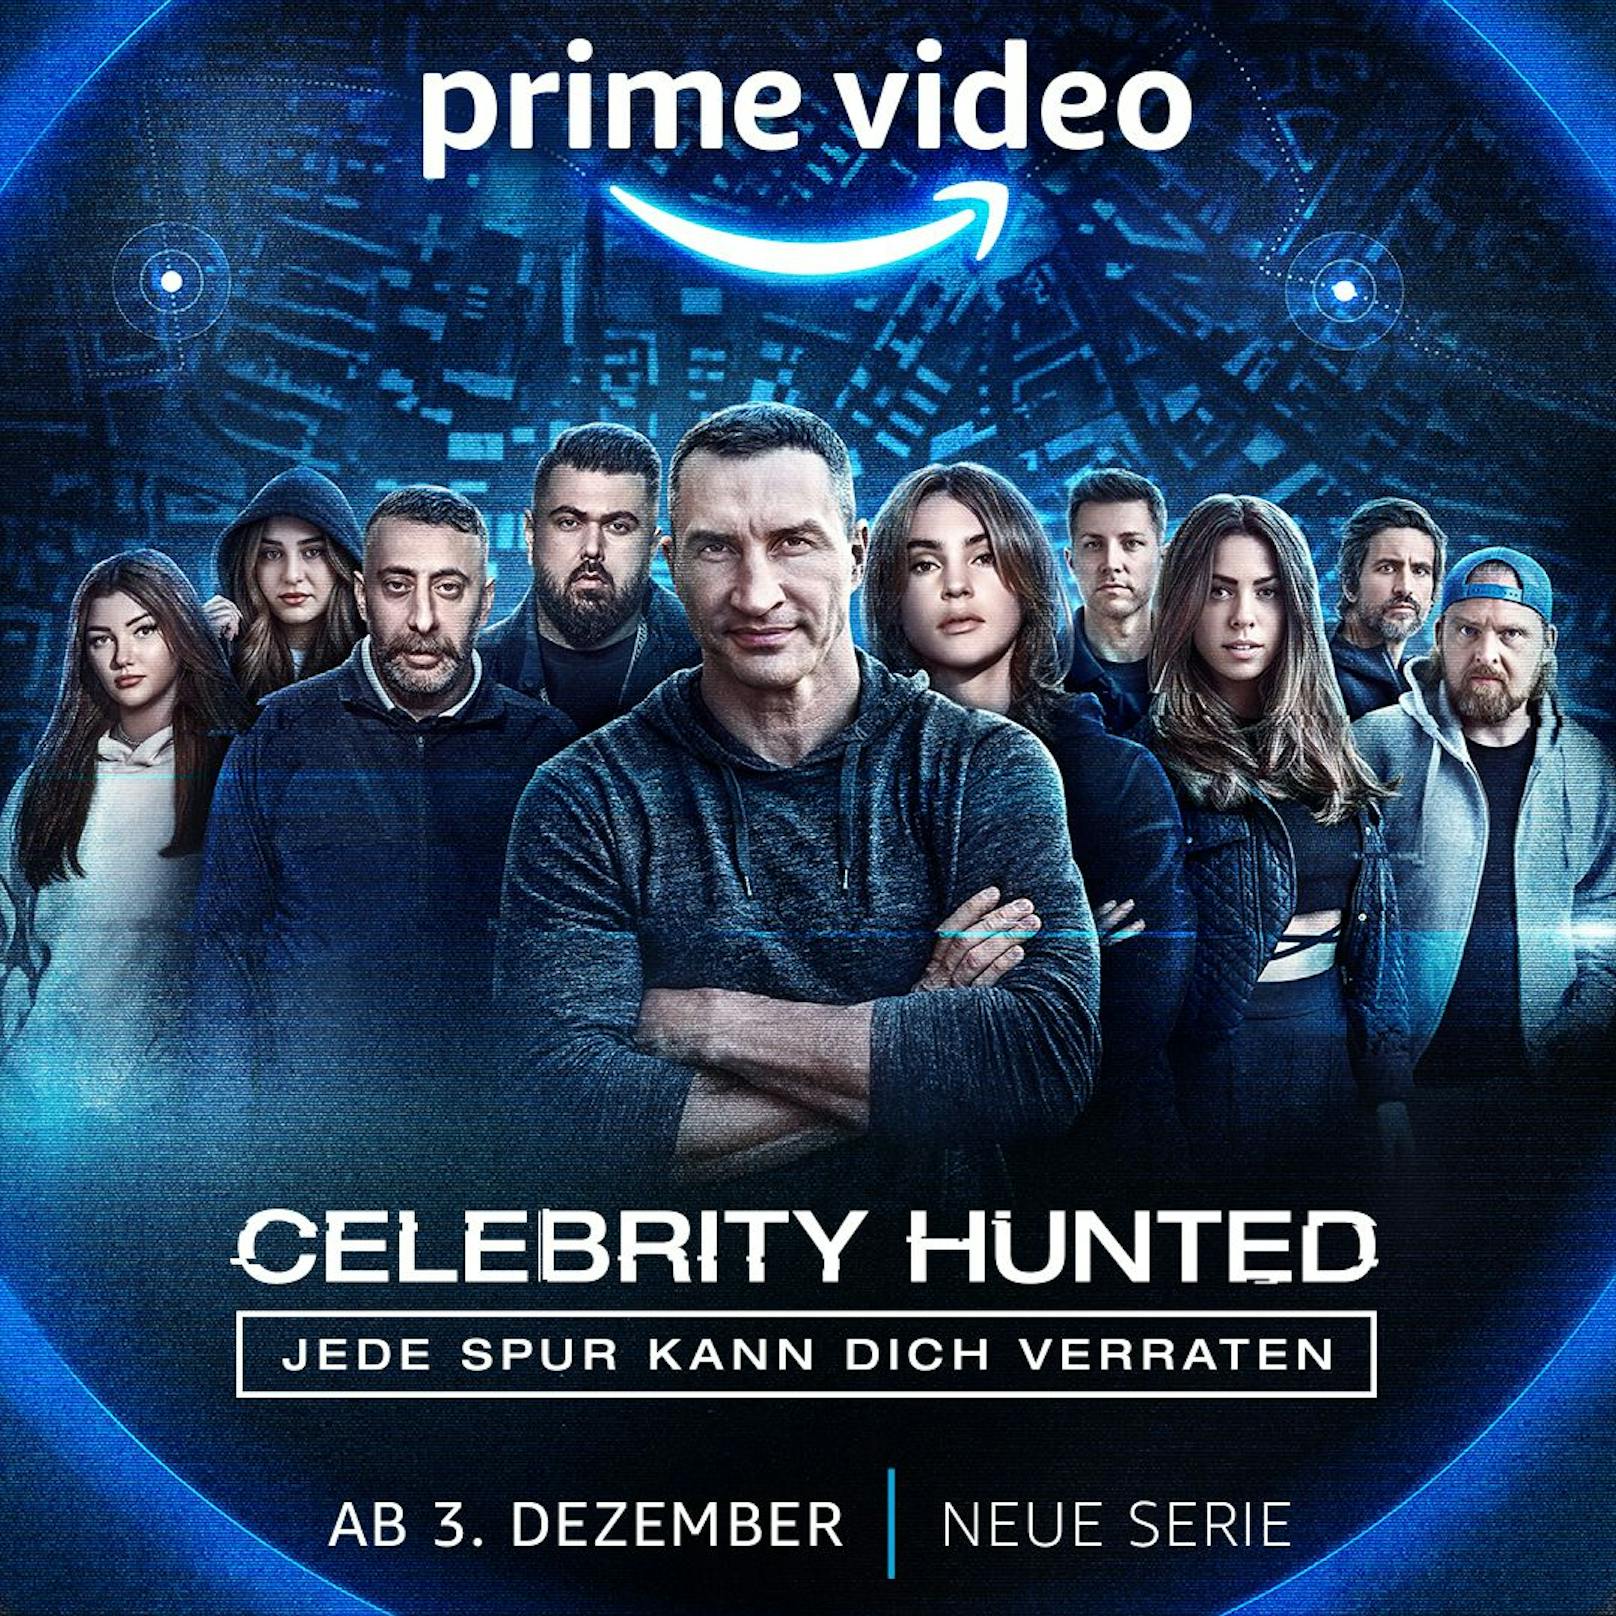 Die erste Staffel der deutschen Version von "Celebrity Hunted" startet am 3. Dezember auf Prime Video.